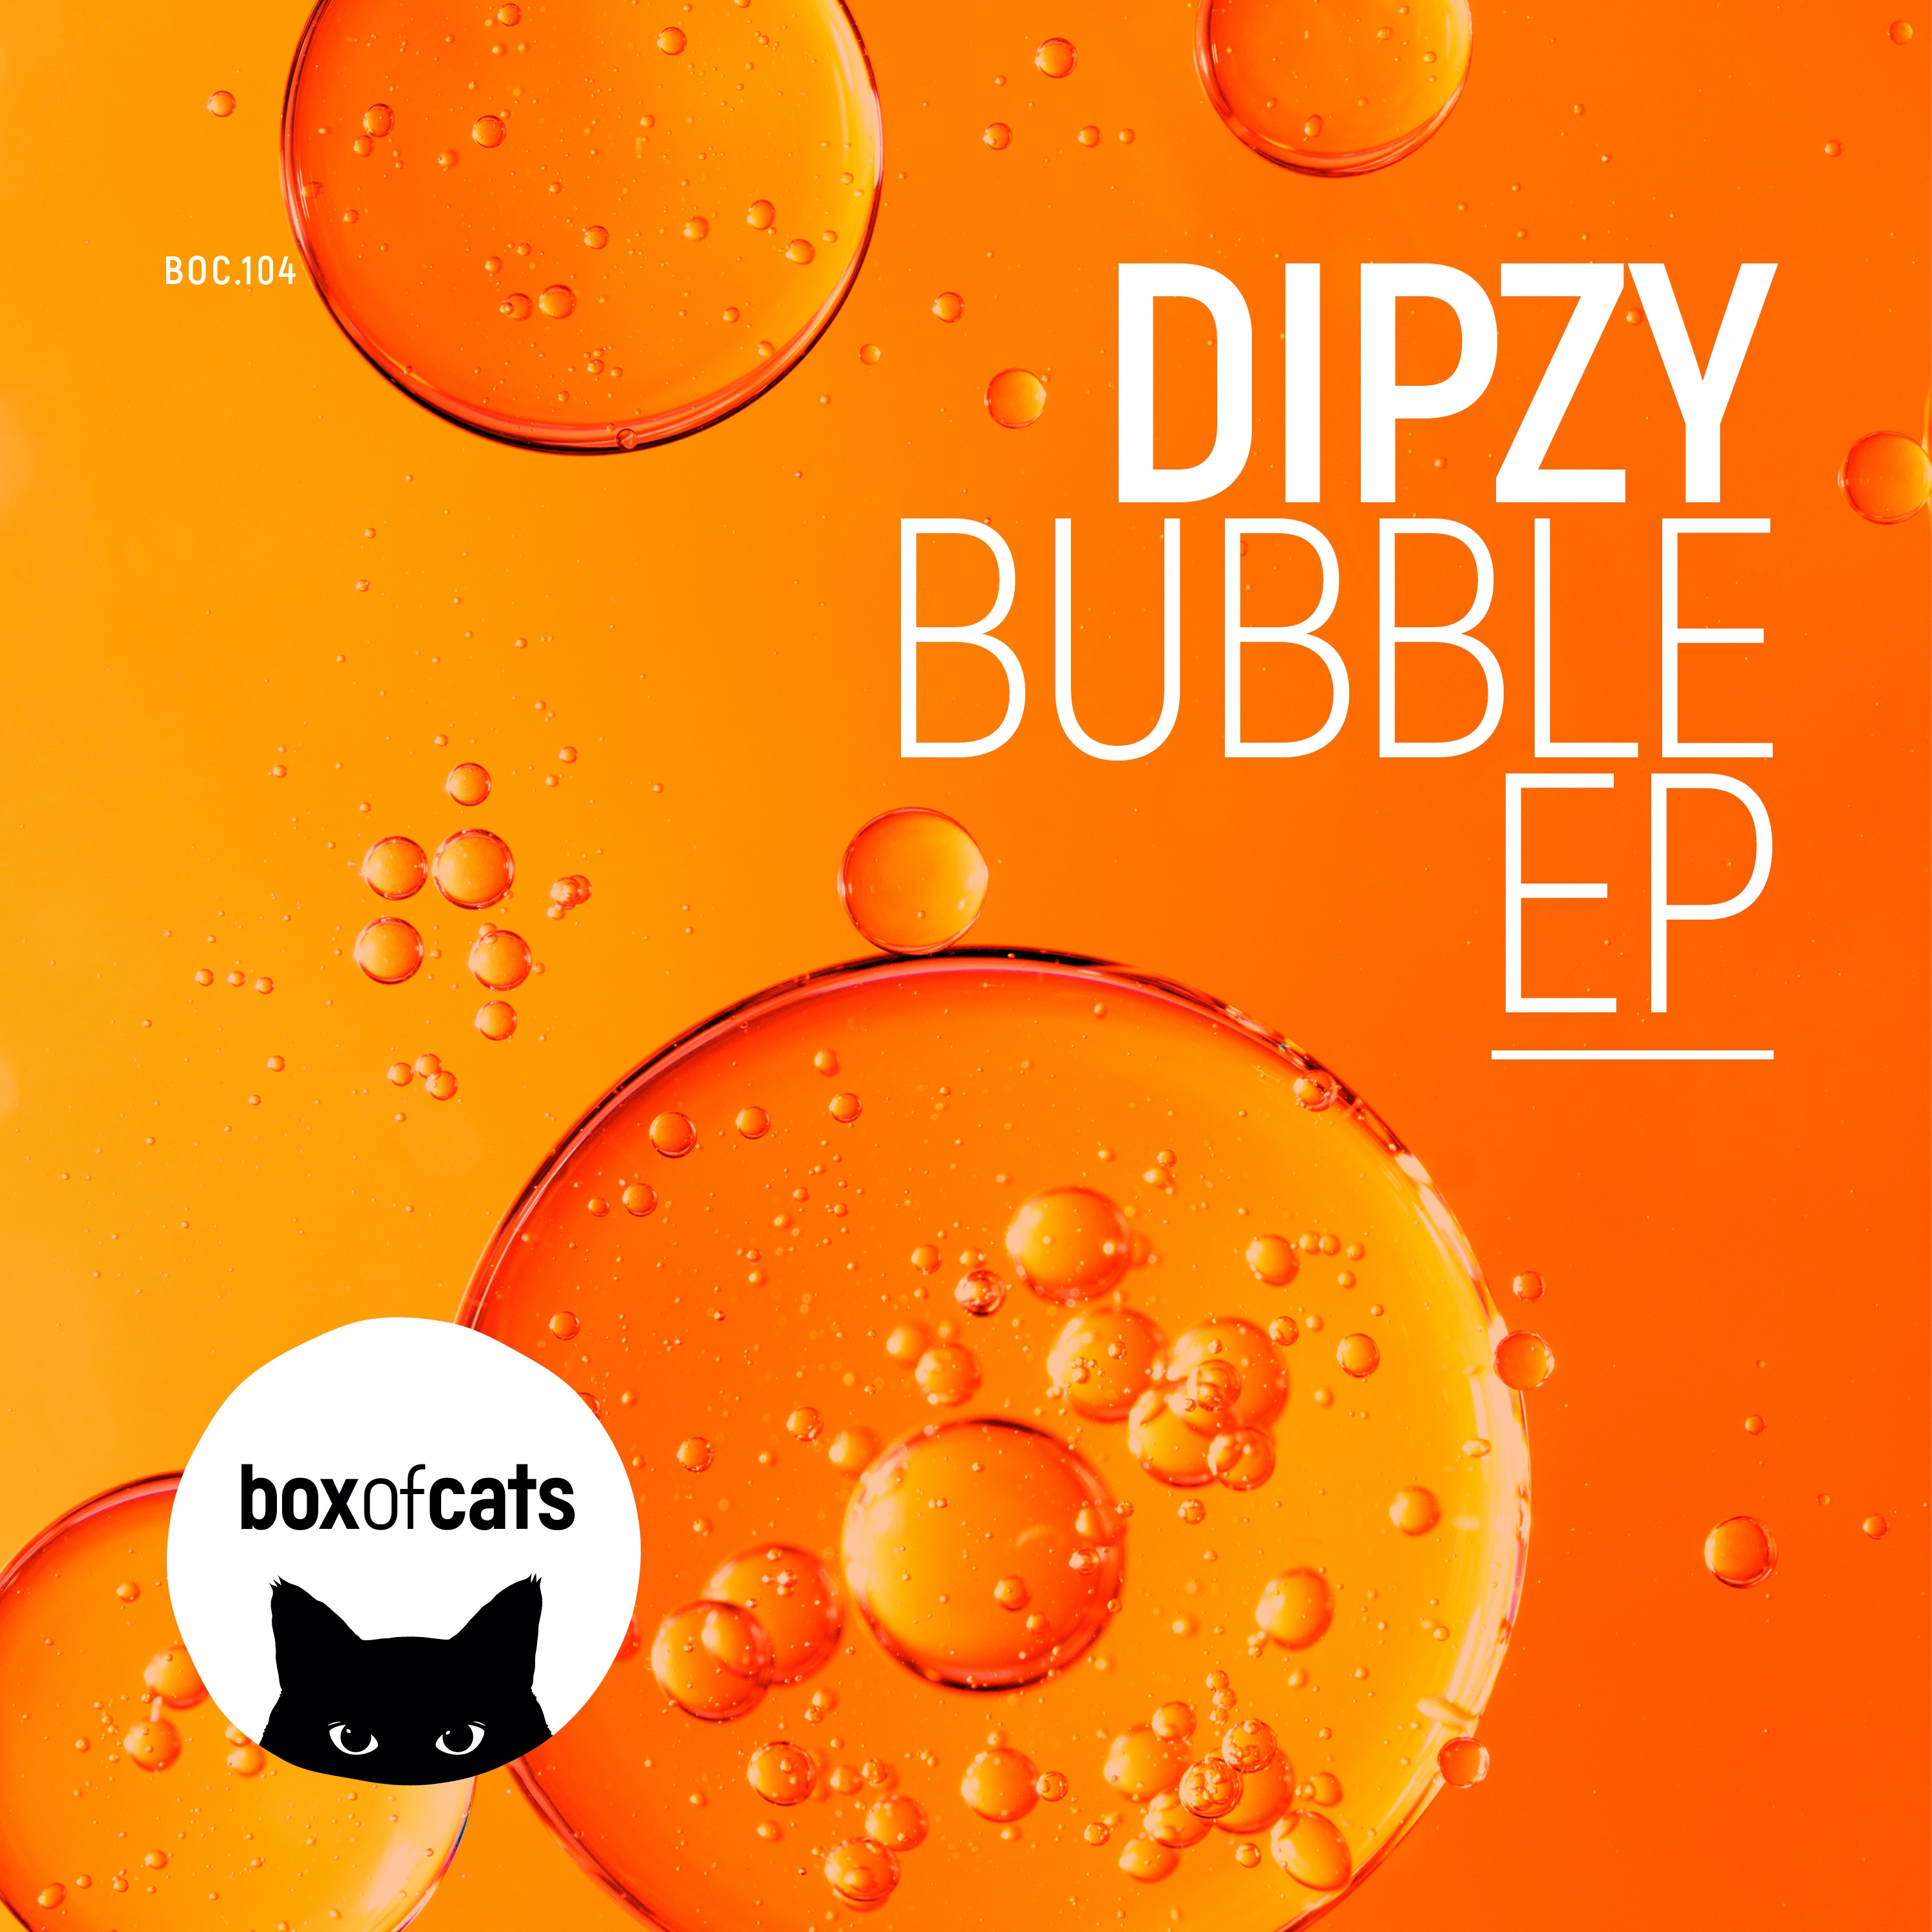 ഡൗൺലോഡ് Dipzy - Bubble (BOC104)